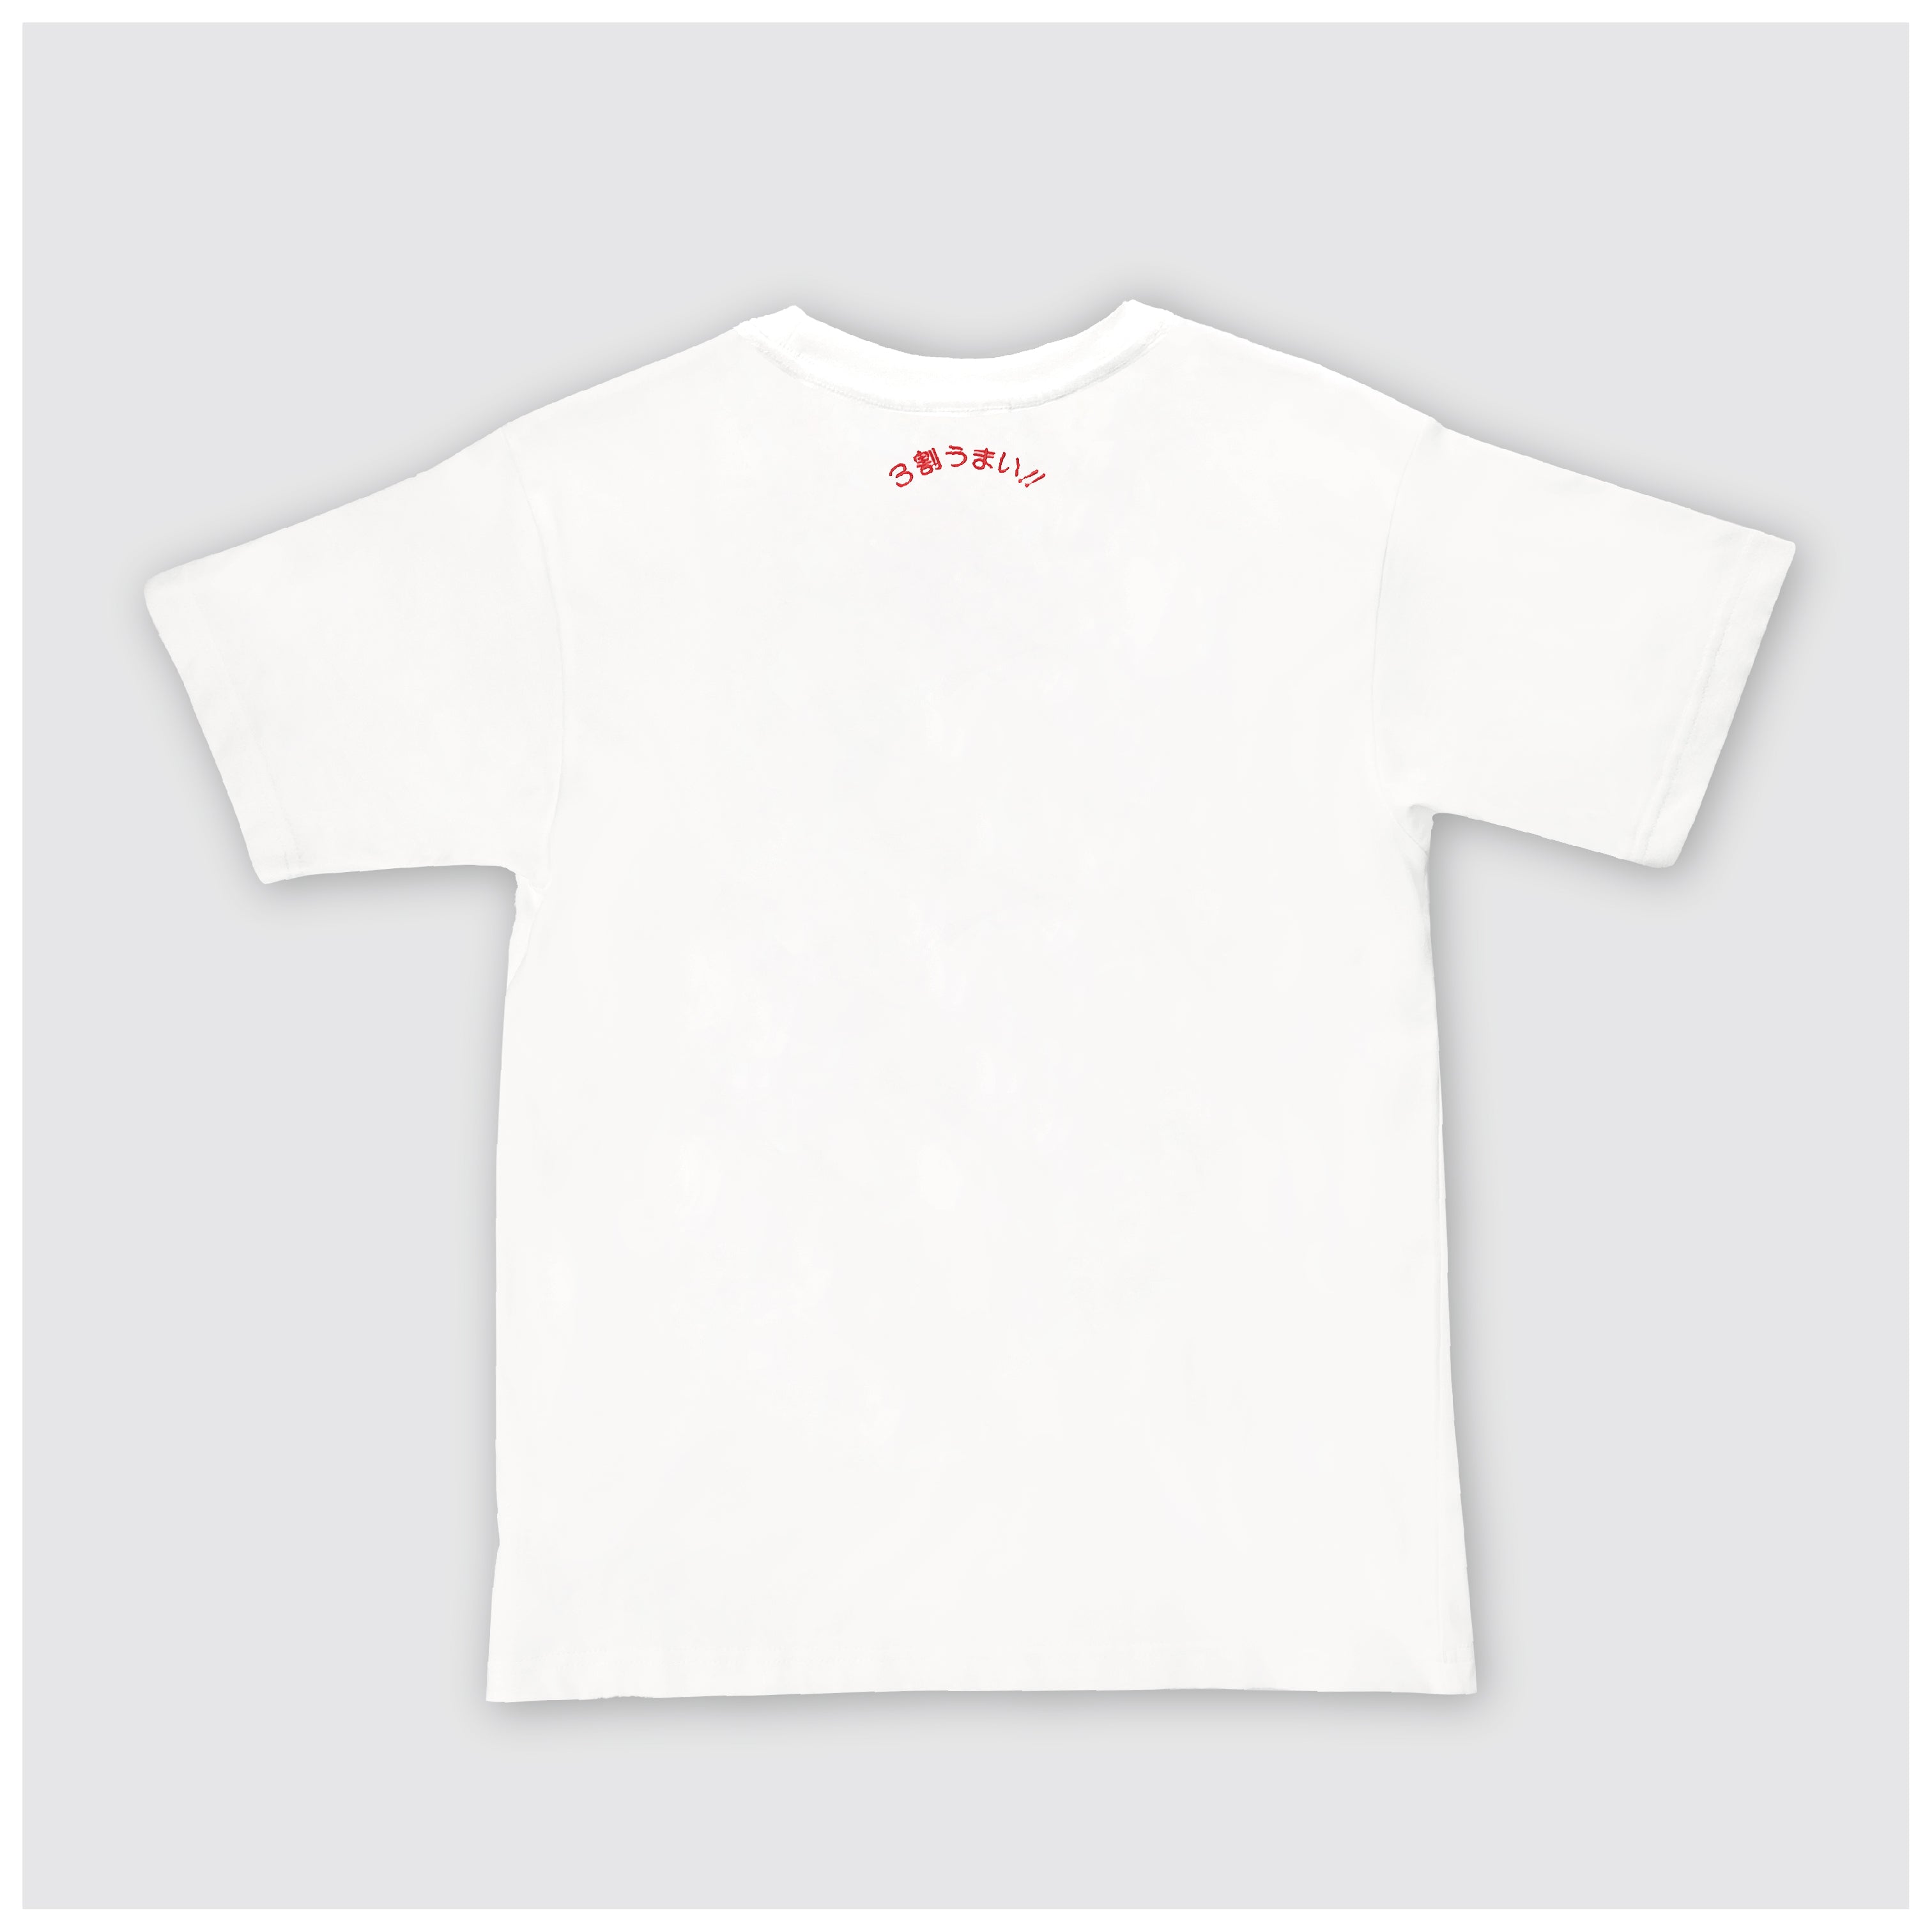 Bahagi 2 Gyoza Manchuria T-shirt